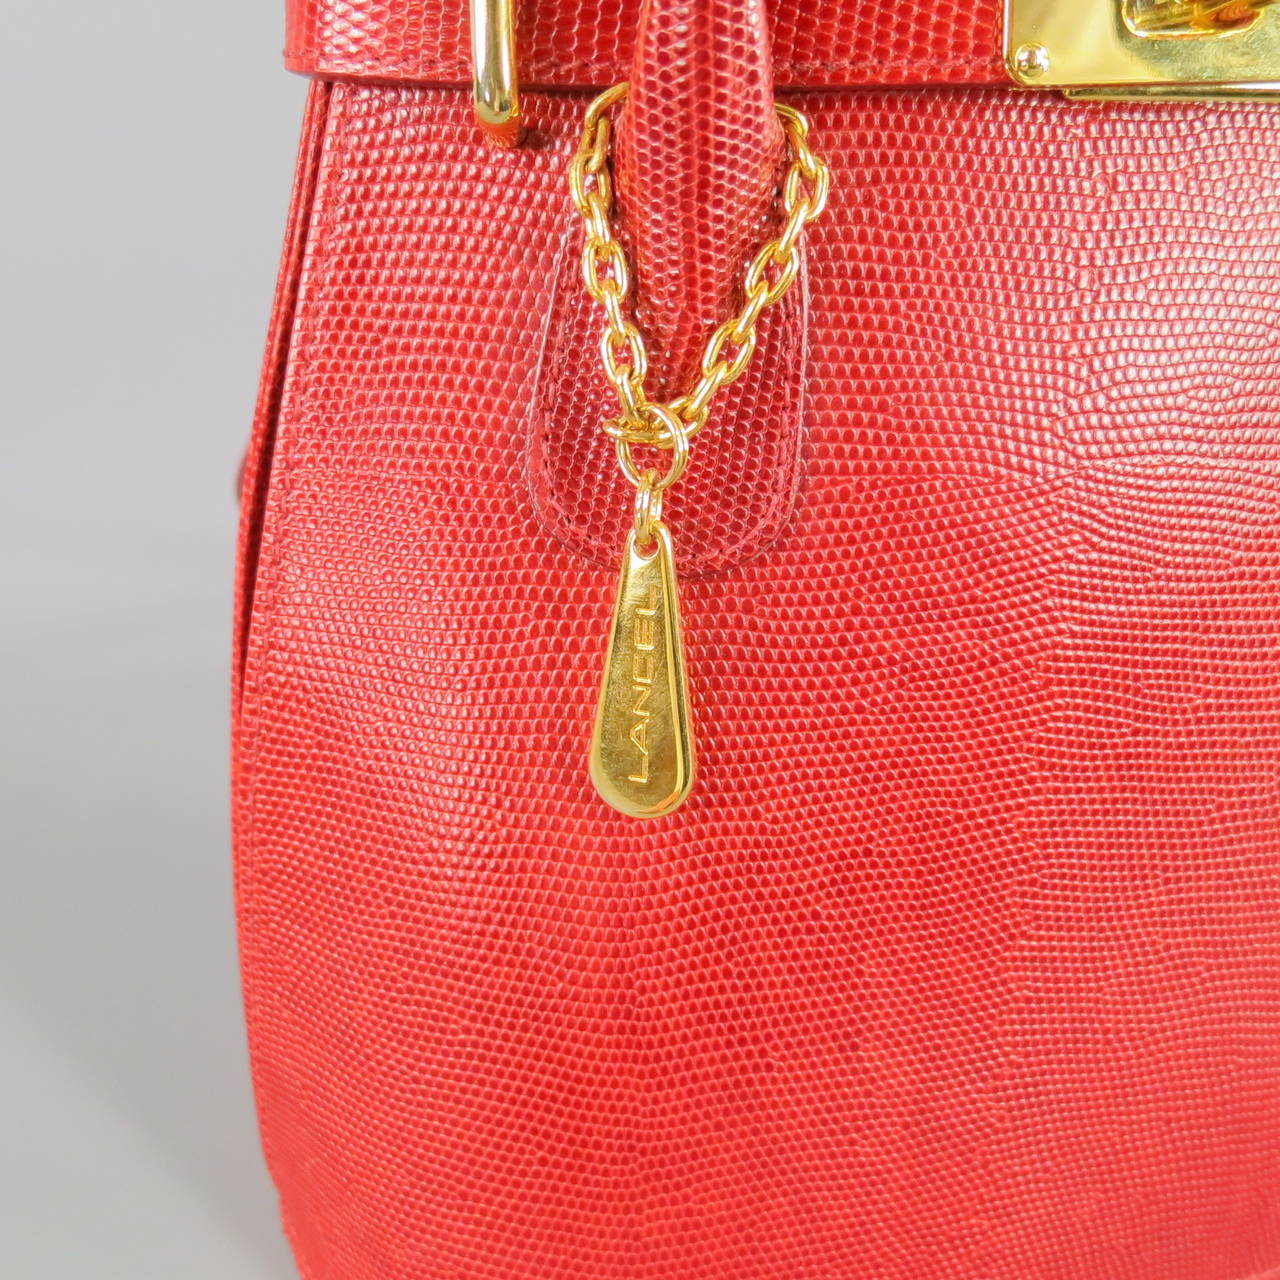 sac lancel rouge vintage